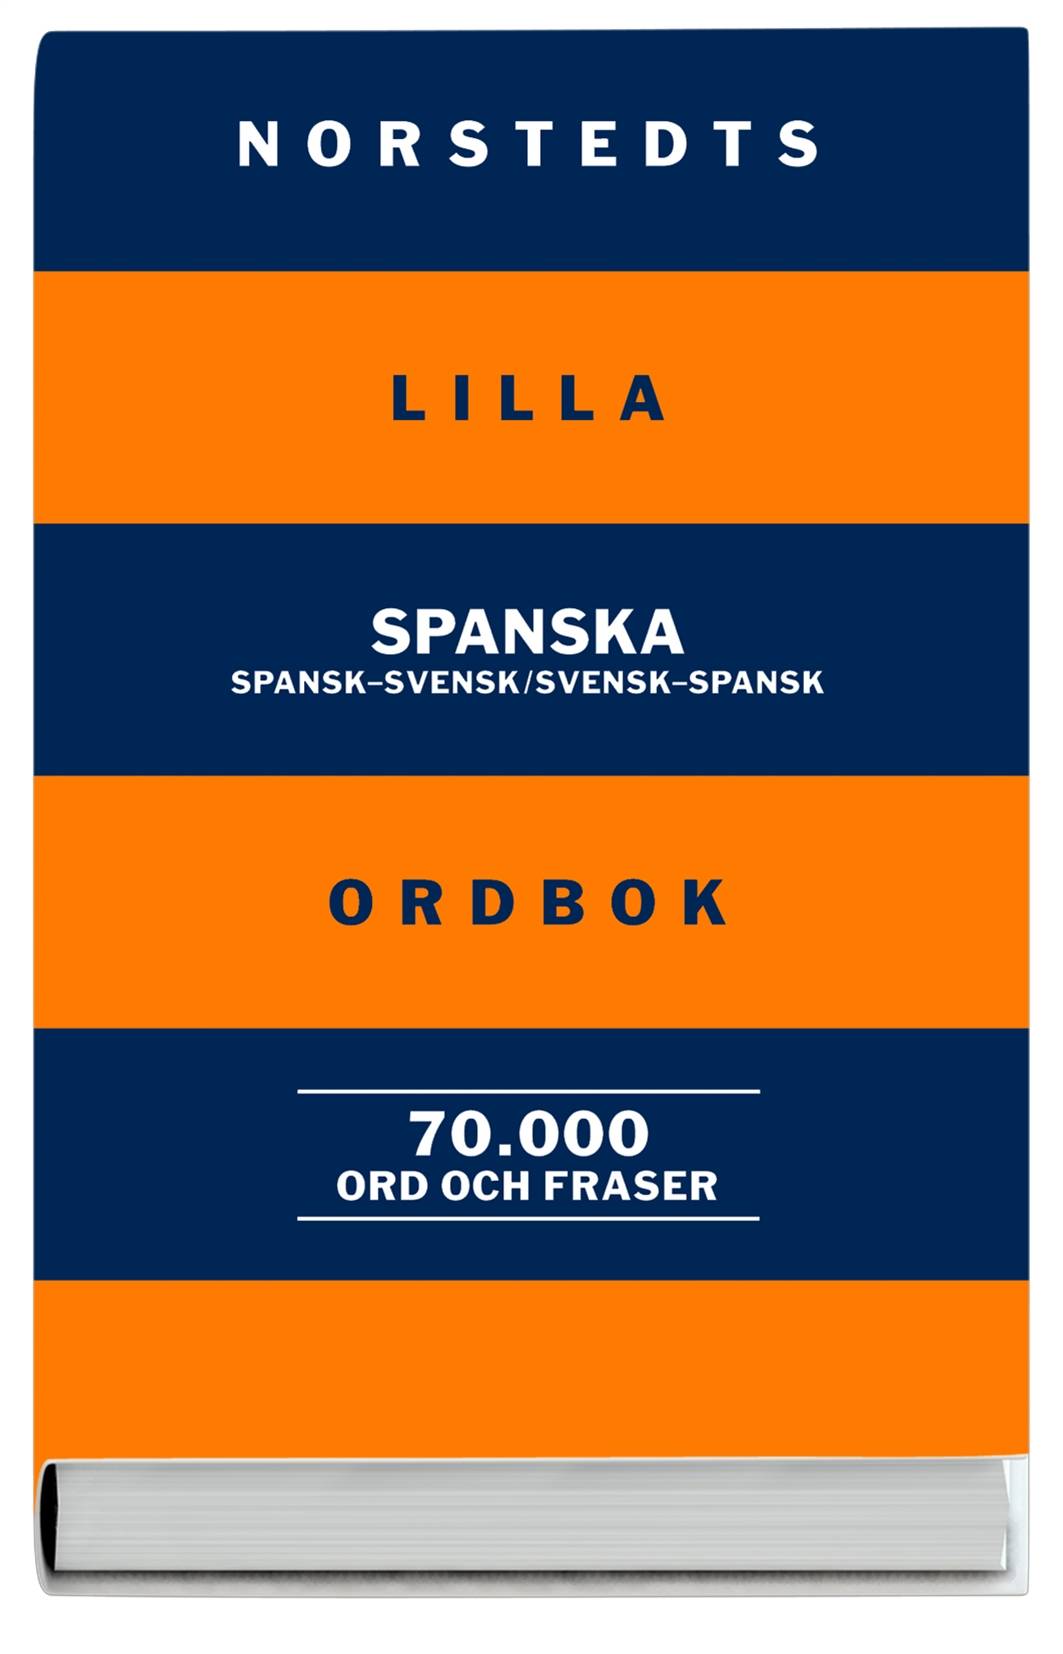 Norstedts lilla spanska ordbok : spansk-svensk, svensk-spansk : 70.000 ord och fraser